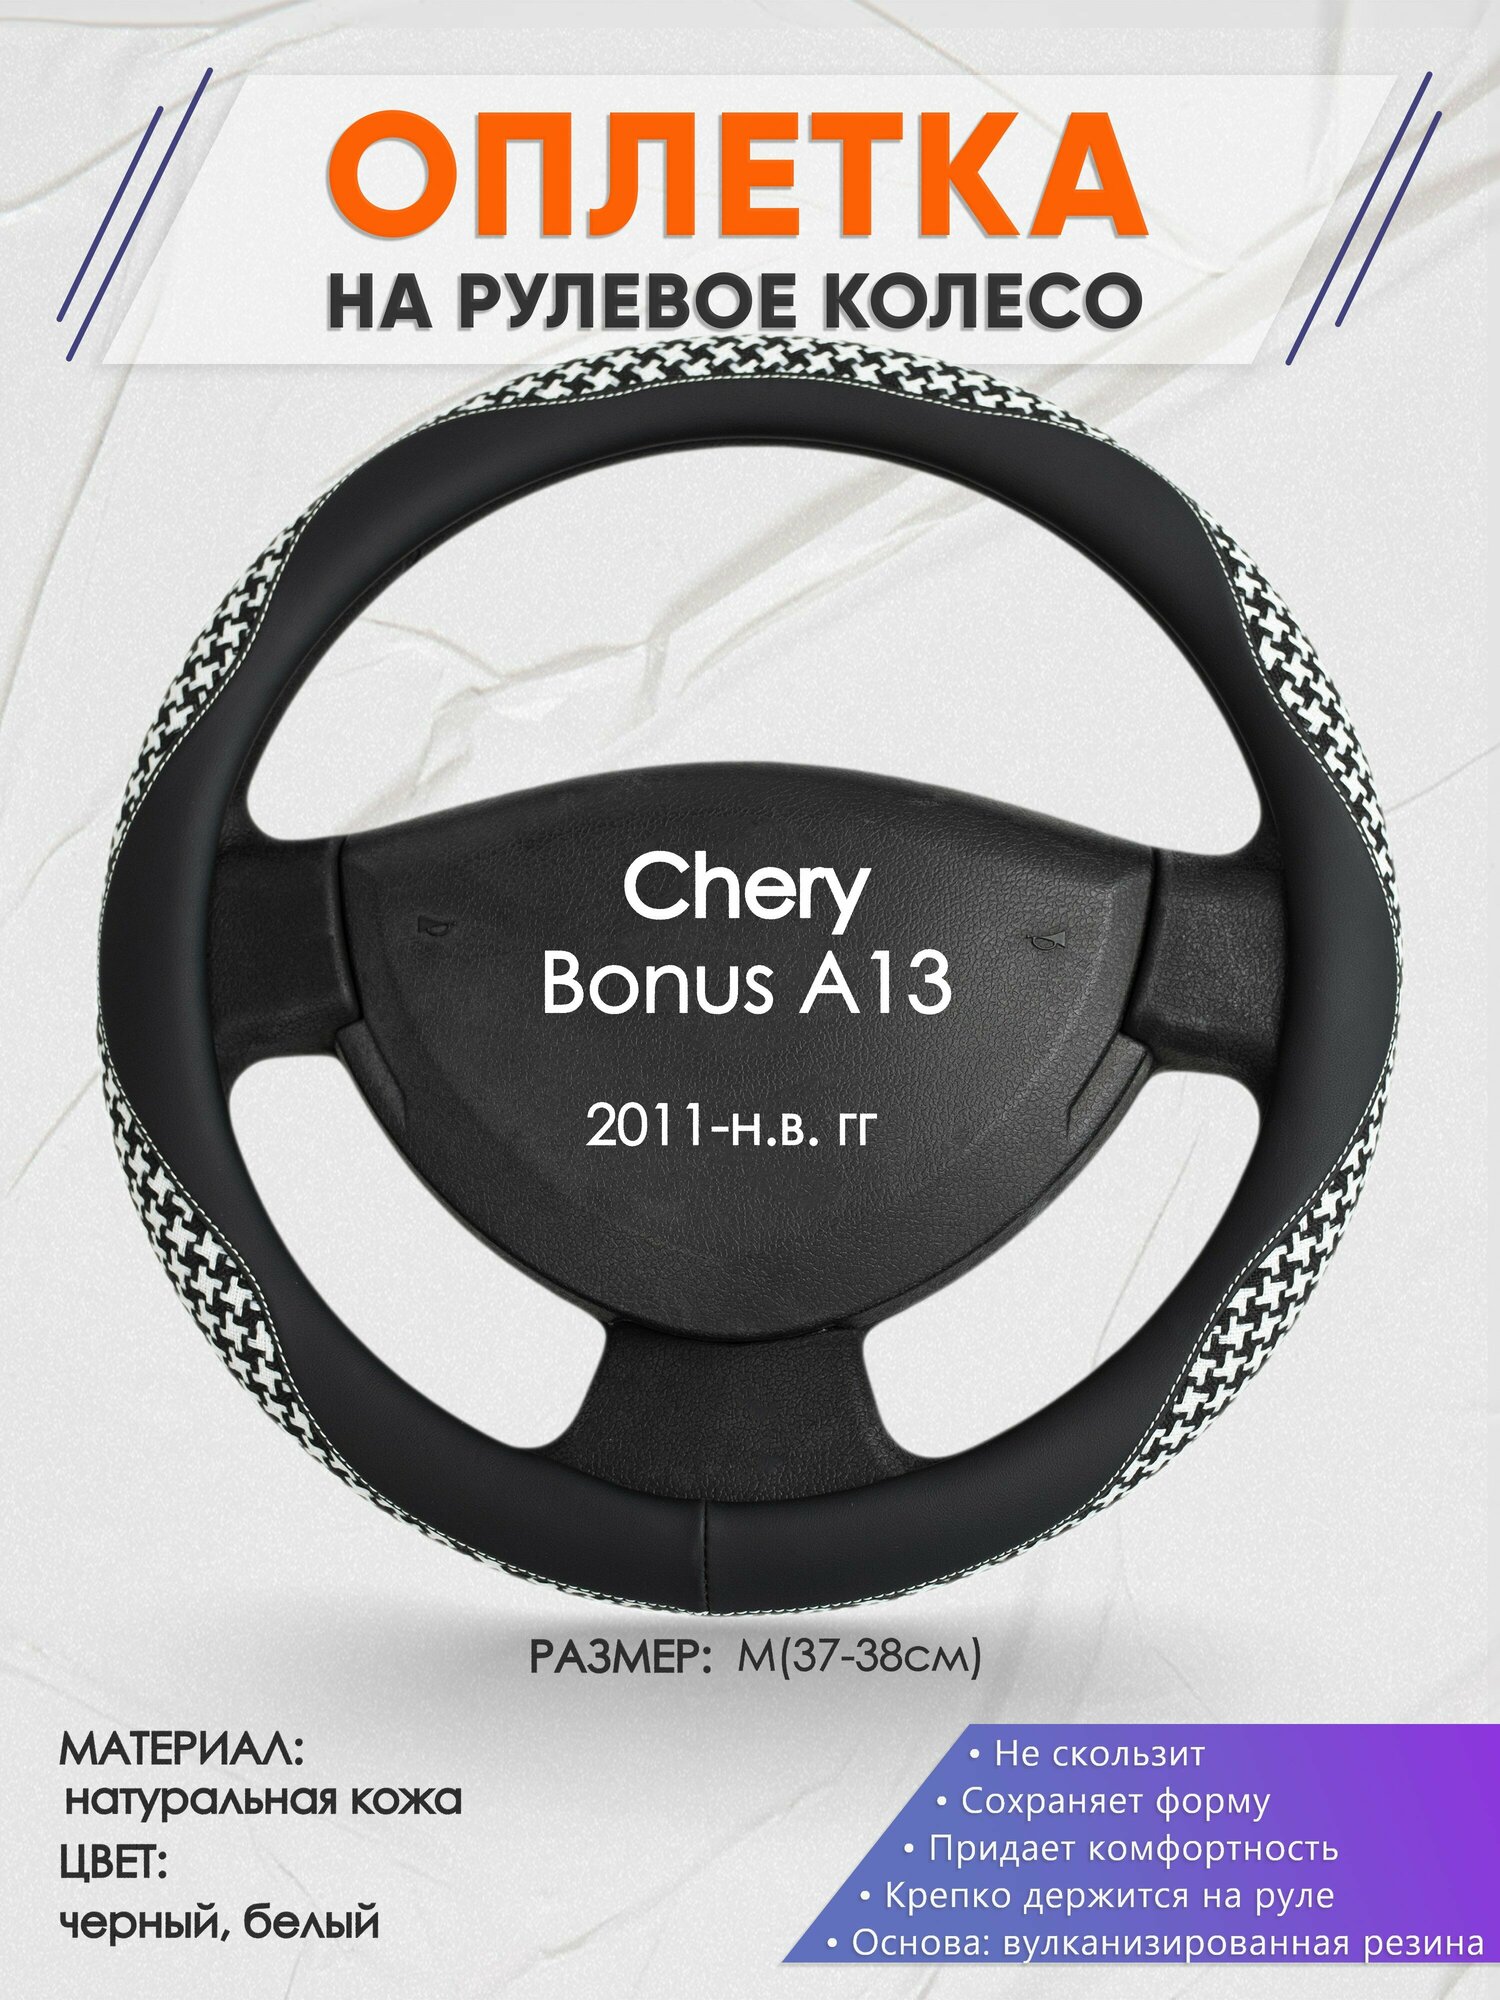 Оплетка на руль для Chery Bonus A13(Чери Бонус А13) 2011-н. в, M(37-38см), Натуральная кожа 21